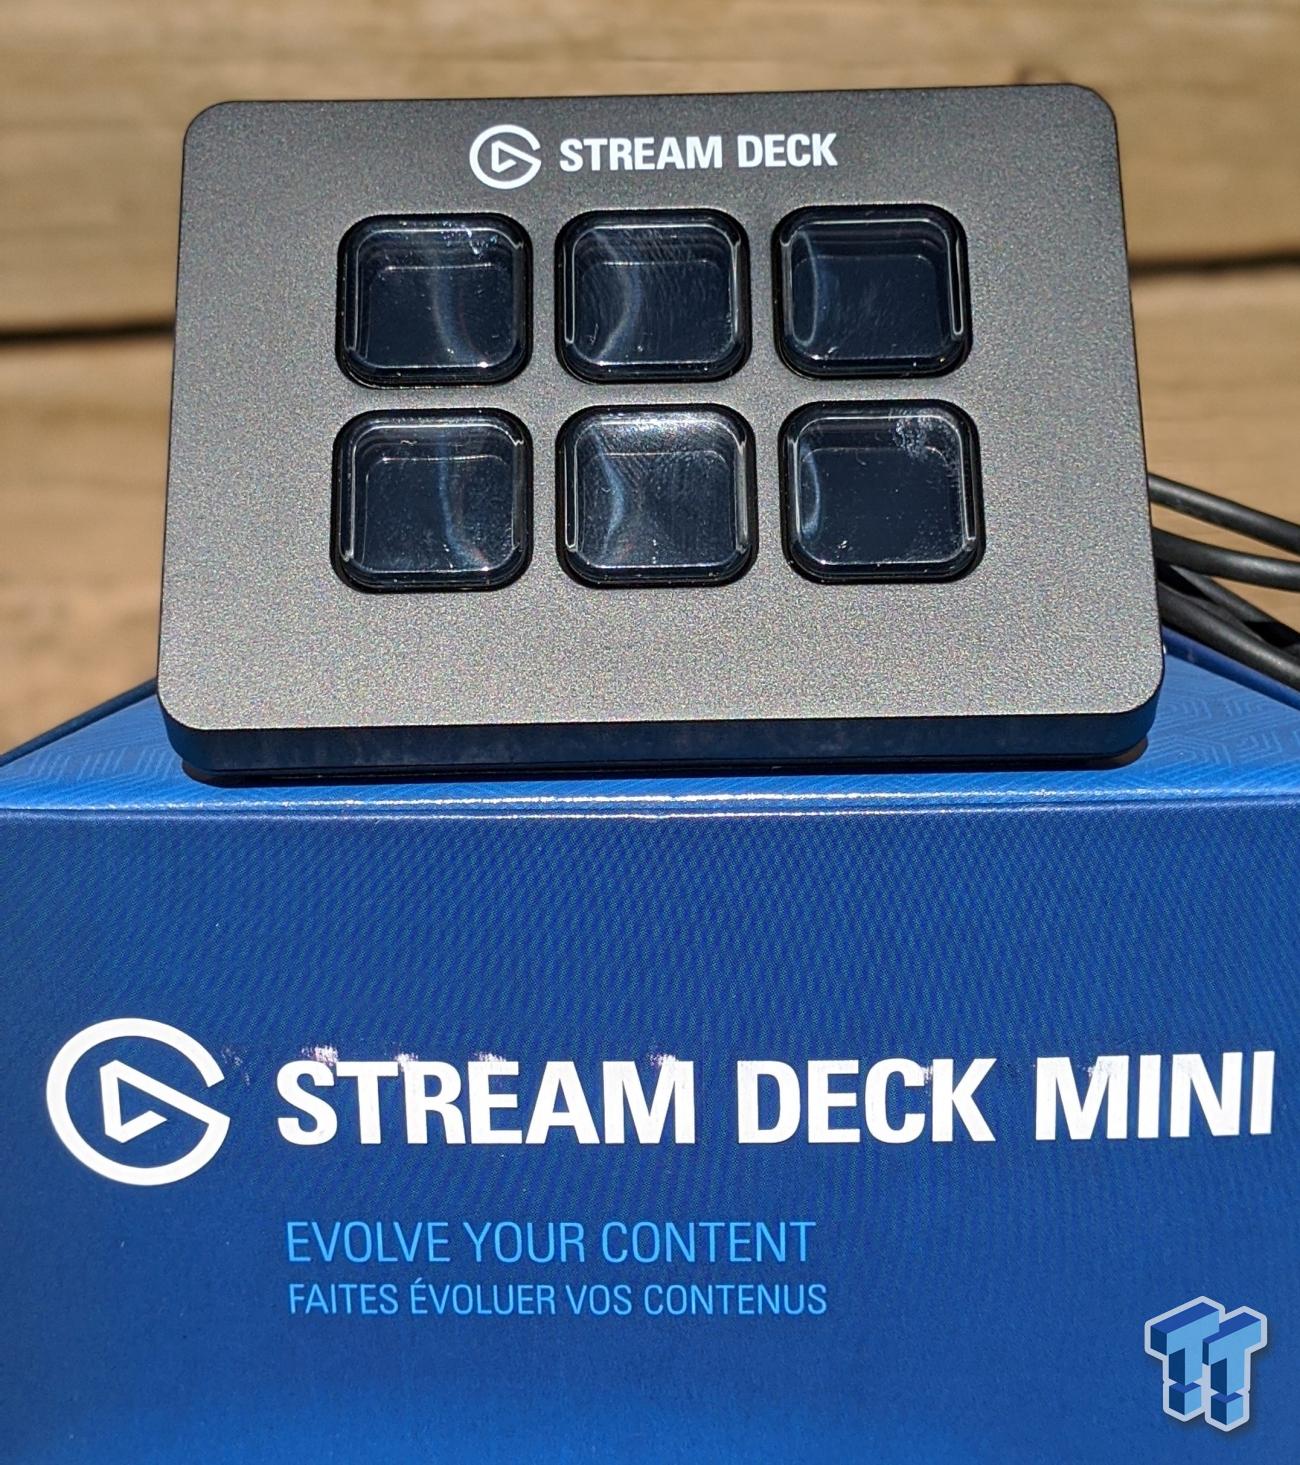 Elgato Stream Deck Mini